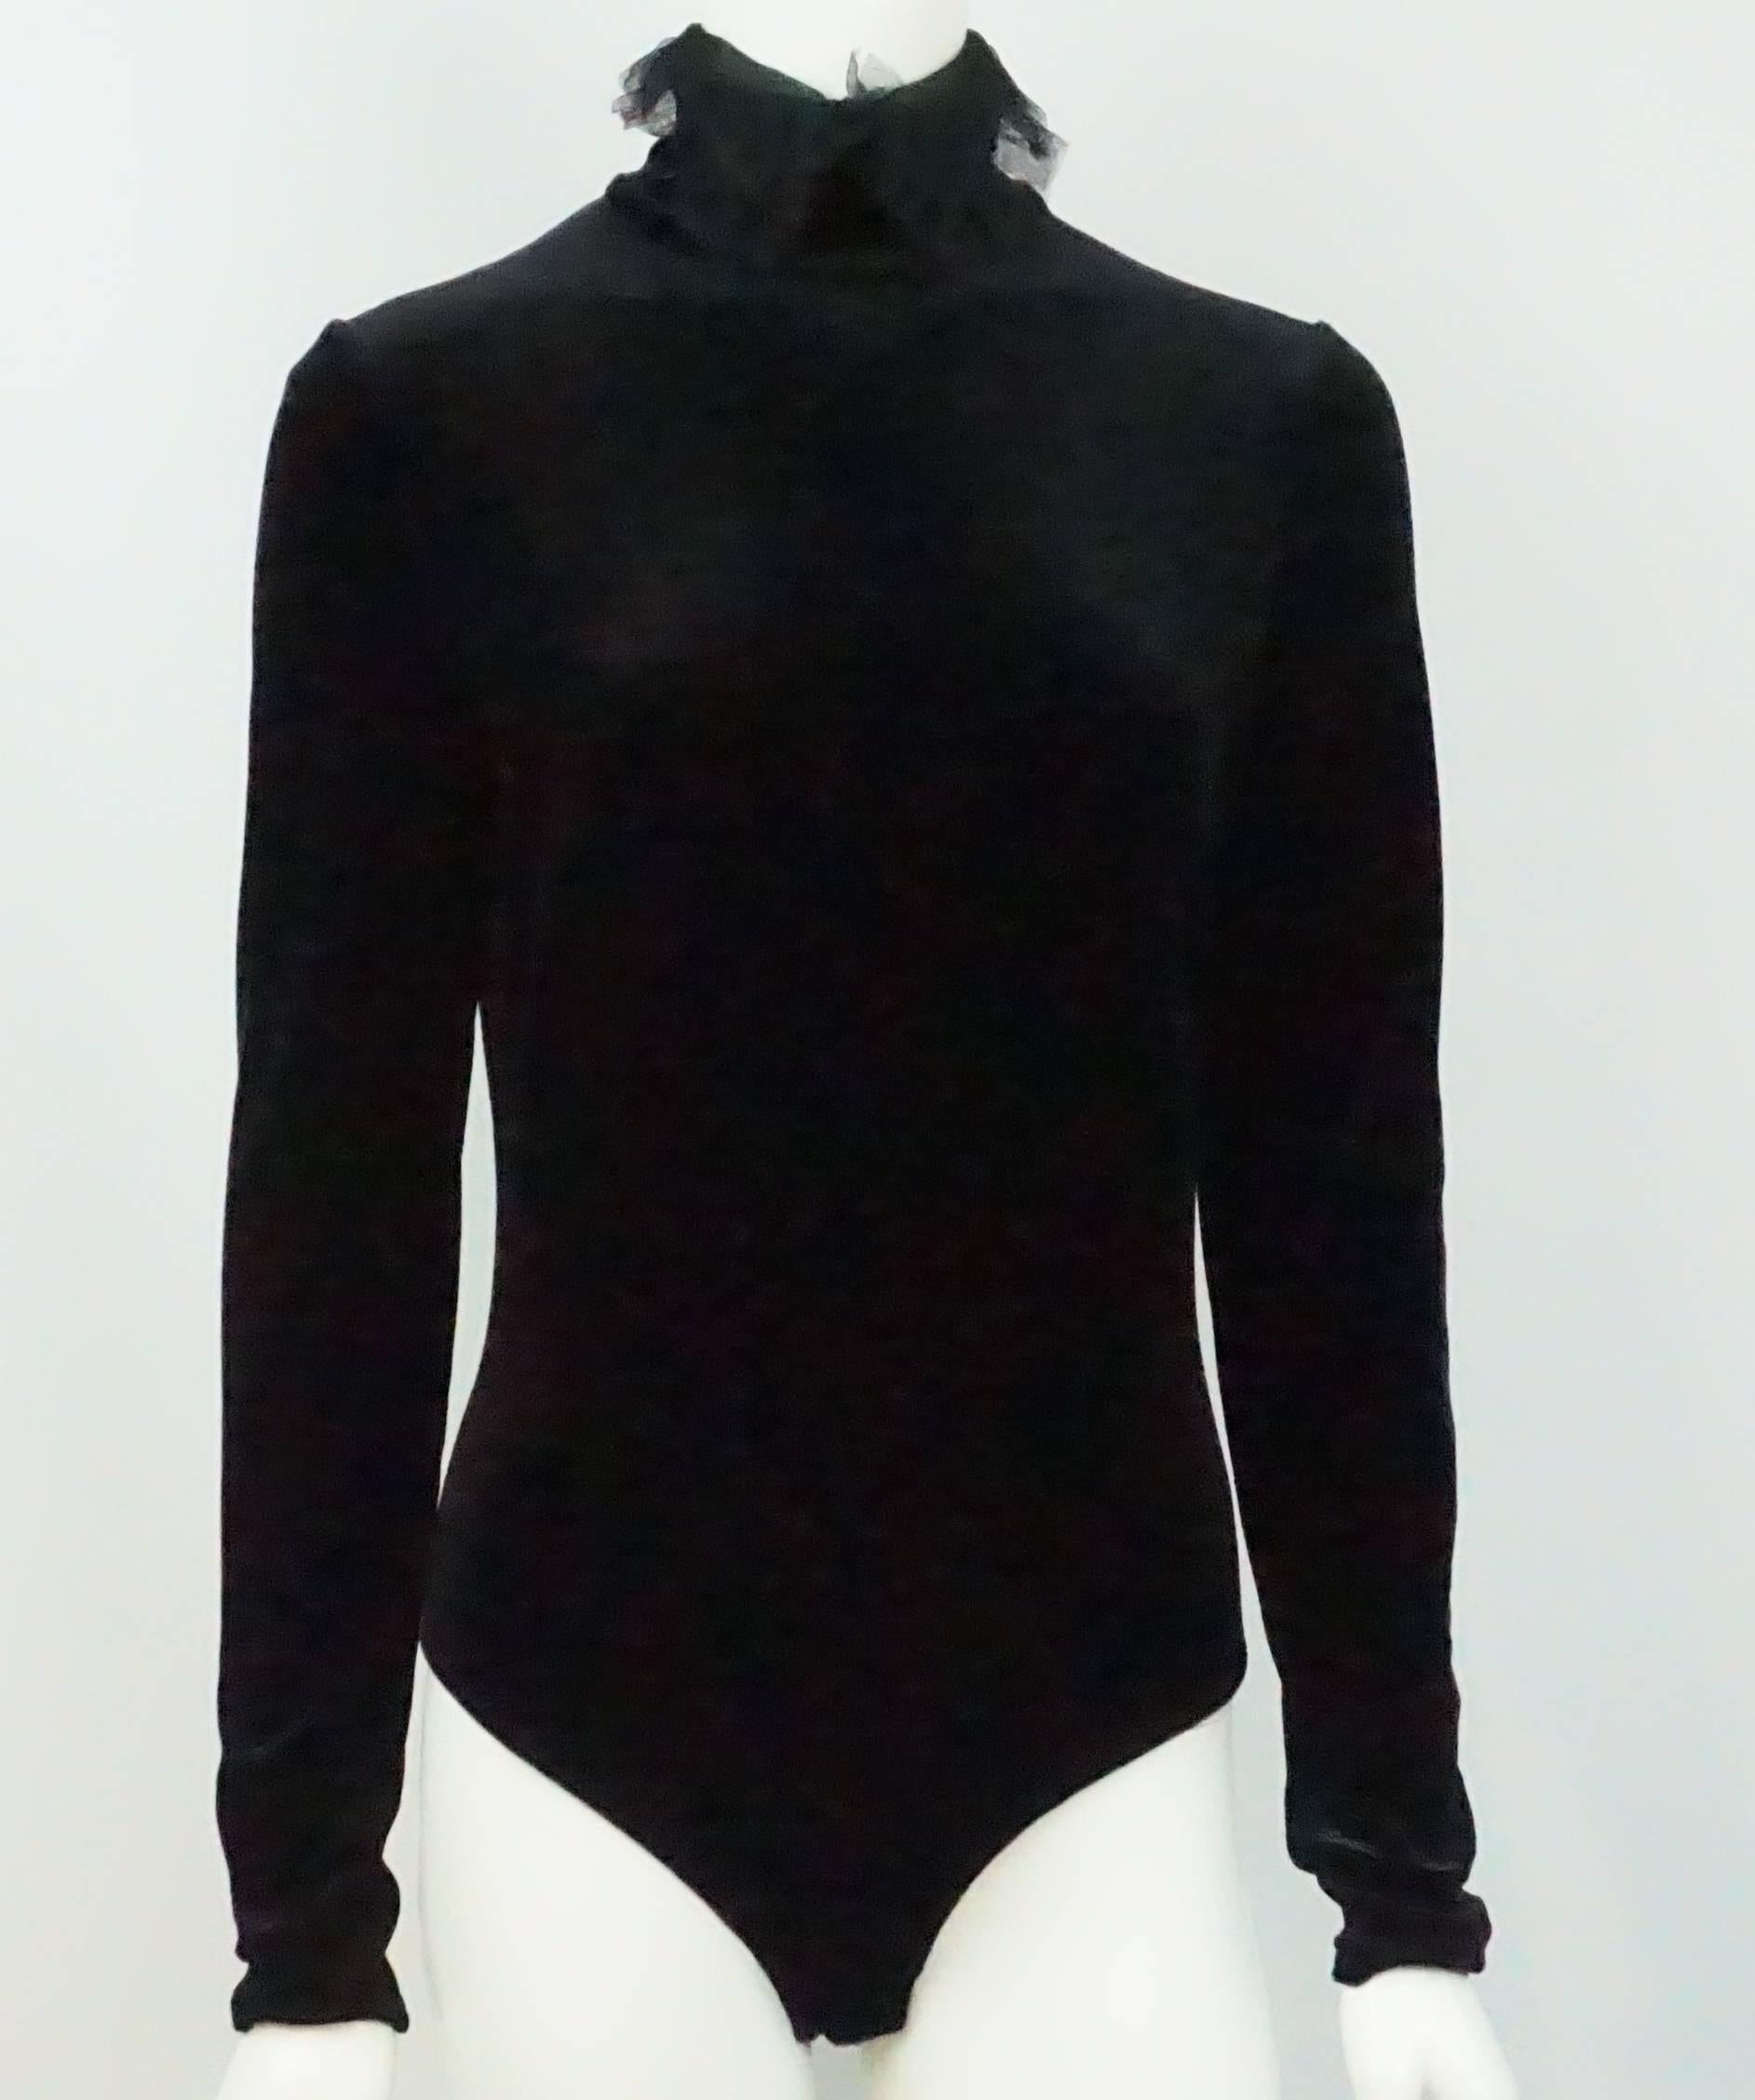 Body en velours noir Christian Dior - 42 - Circa 70's  Le body en velours noir de Dior est doté d'un col roulé haut et d'un détail en dentelle. Il est doté d'une fermeture à glissière au dos et de deux boutons-pression à l'entrejambe.  Cette pièce